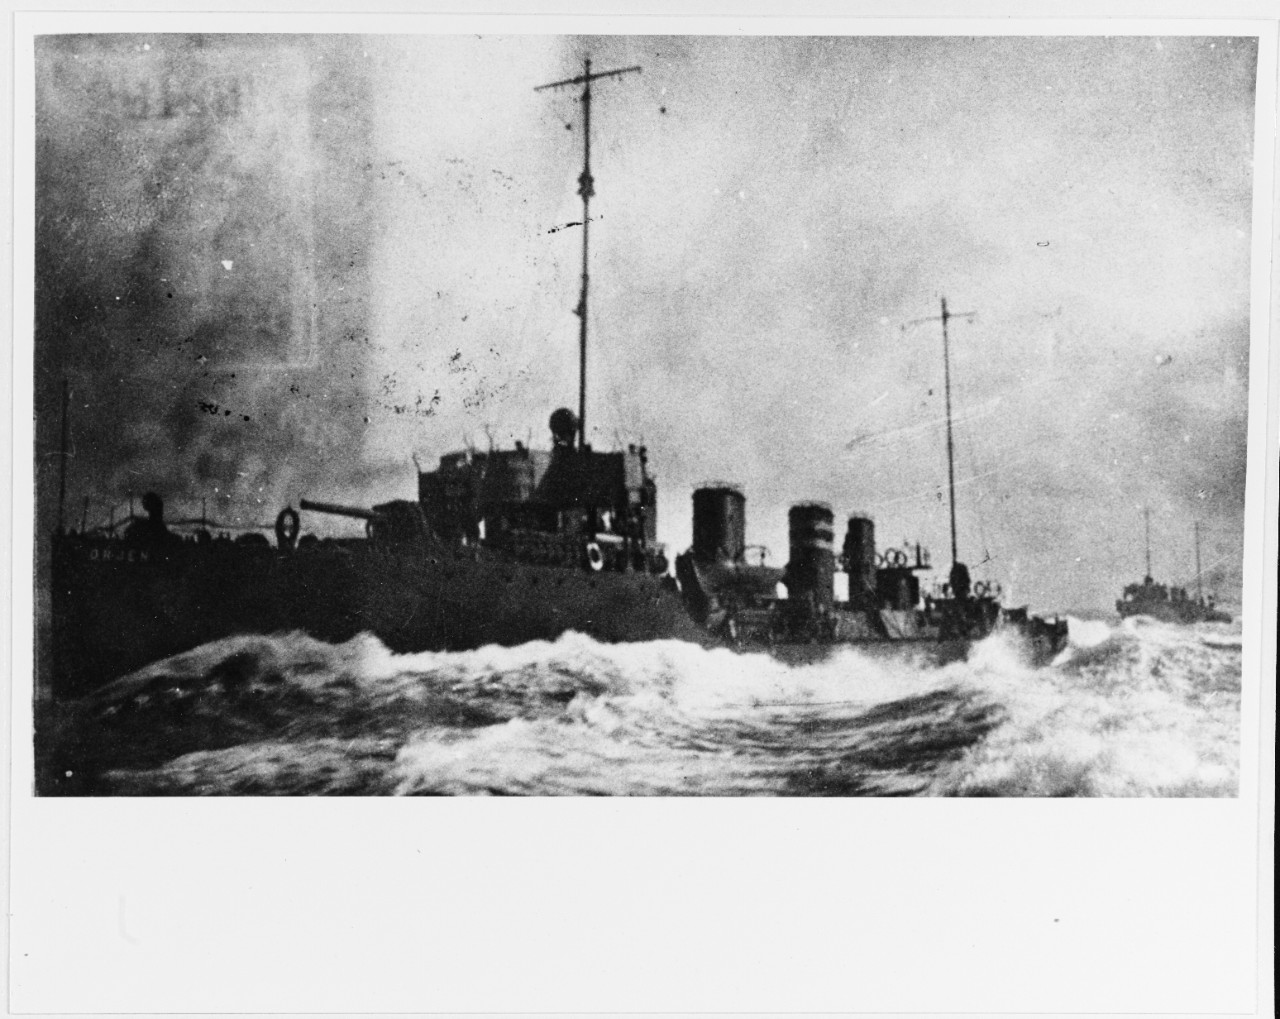 ORJEN (Austrian destroyer, 1913-1937)